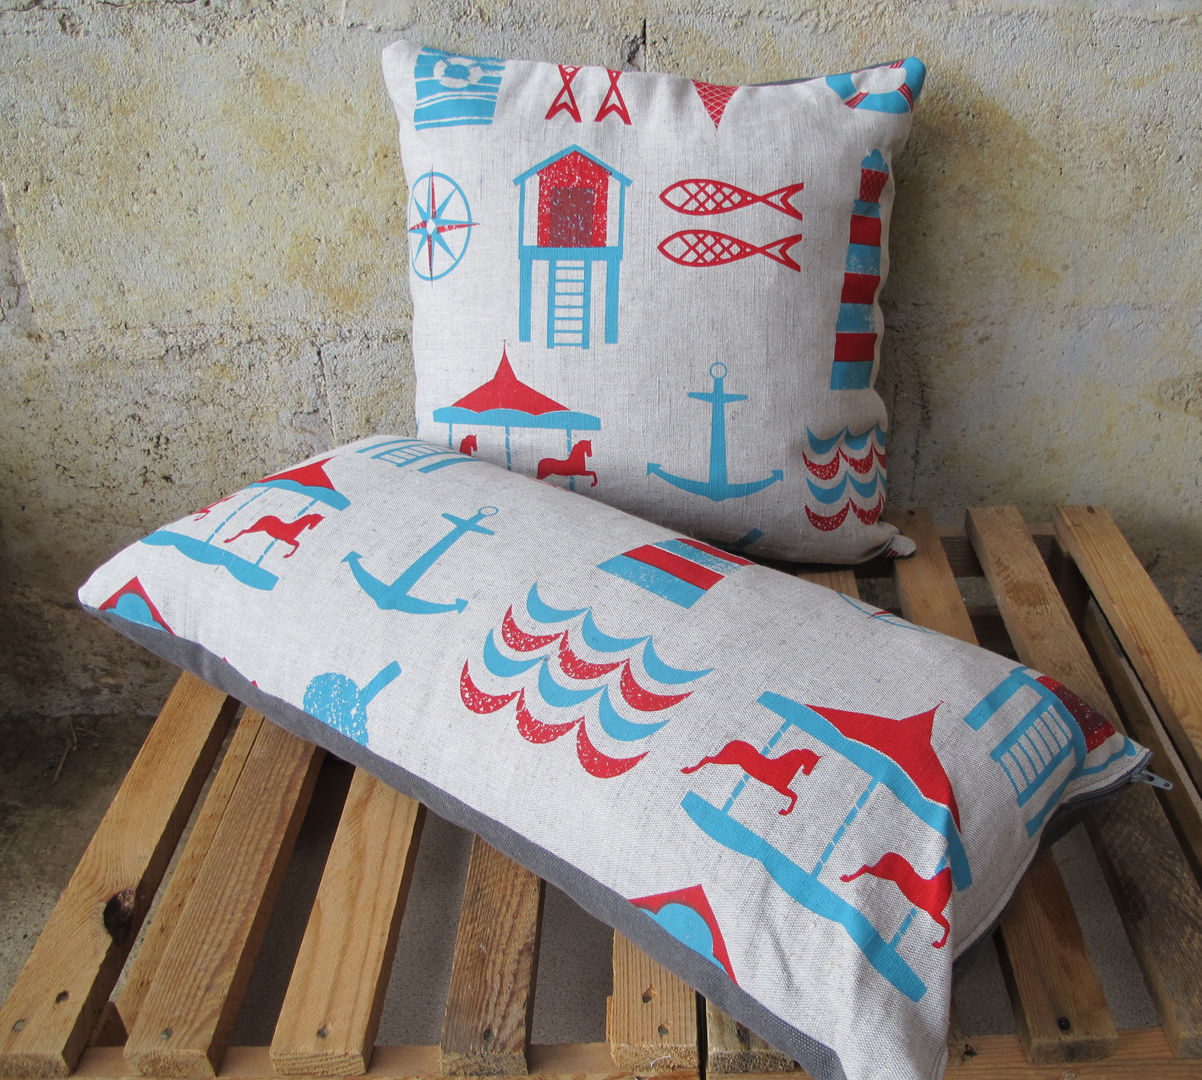 Seaside Print Cushion Anna Bird Textiles Dormitorios modernos Textiles